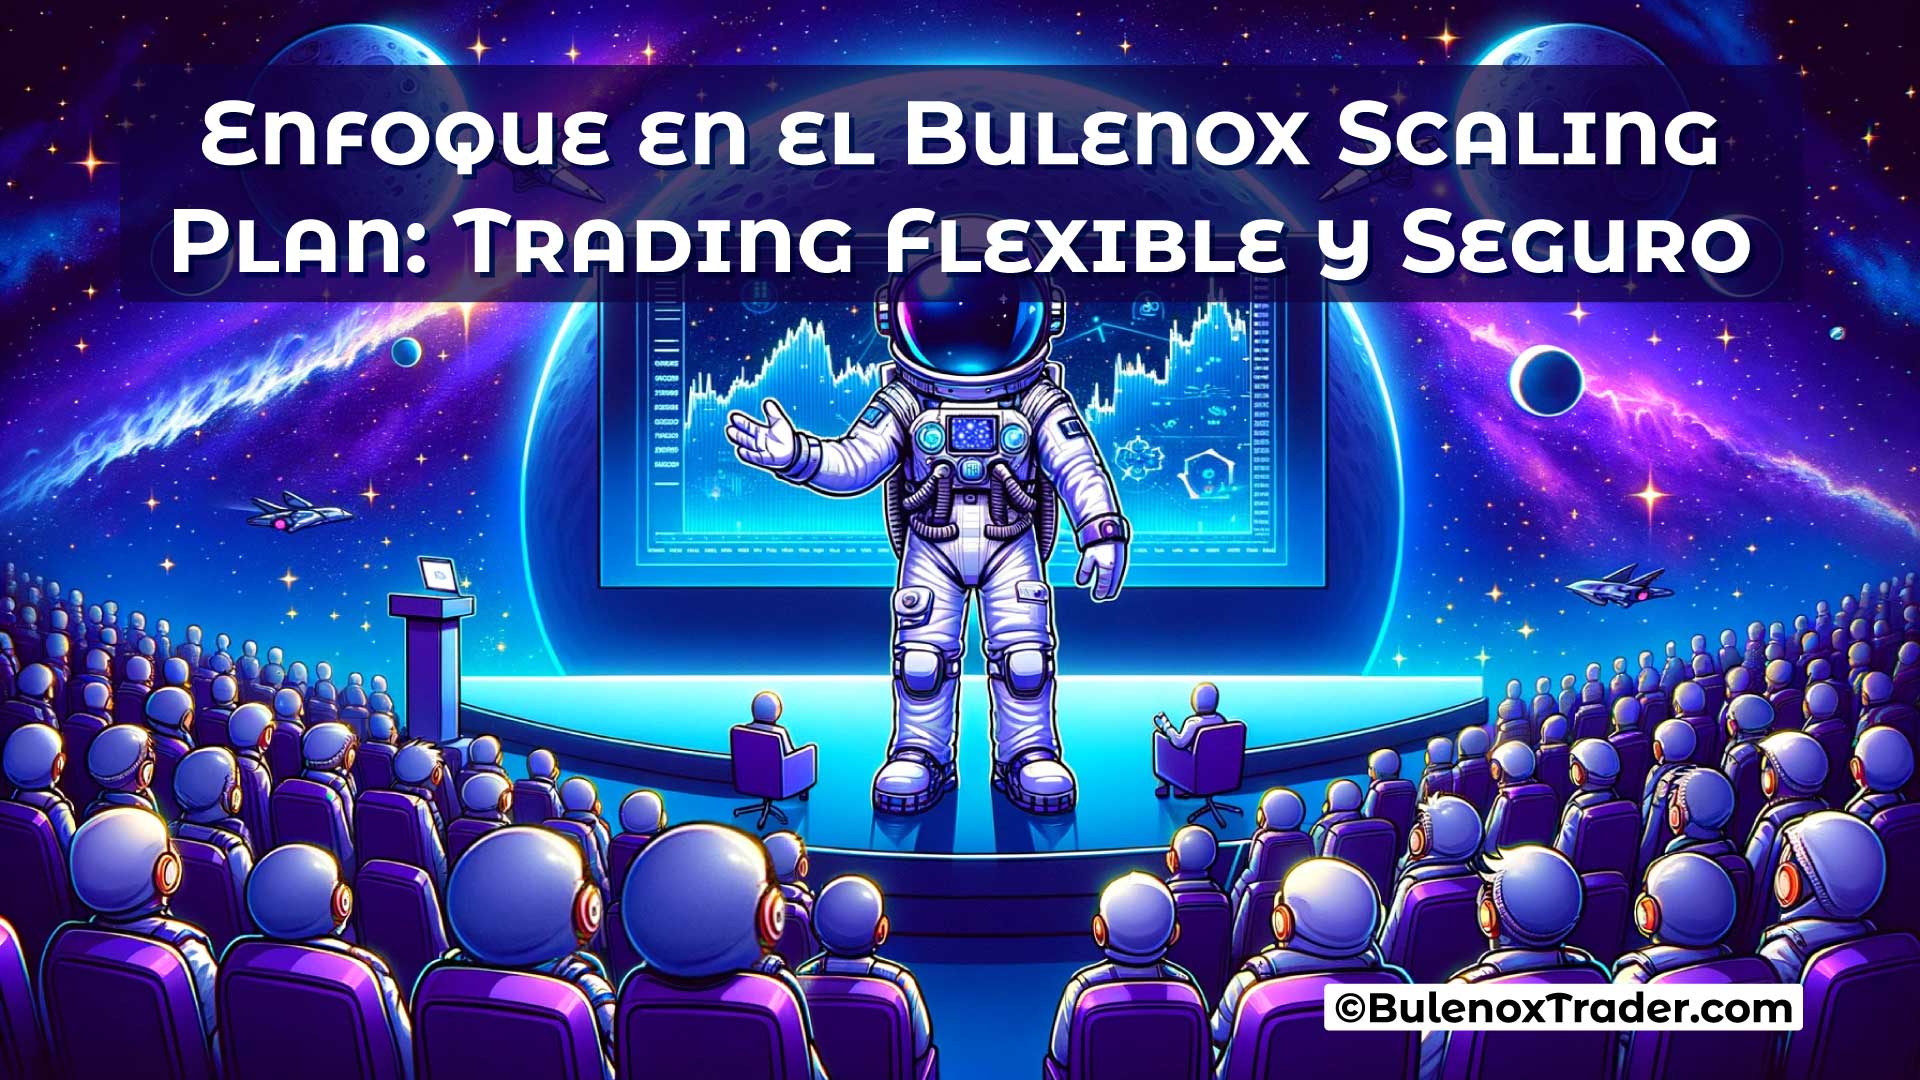 Enfoque-en-el-Bulenox-Scaling-Plan-Trading-Flexible-y-Seguro-on-Bulenox-Trader-Website